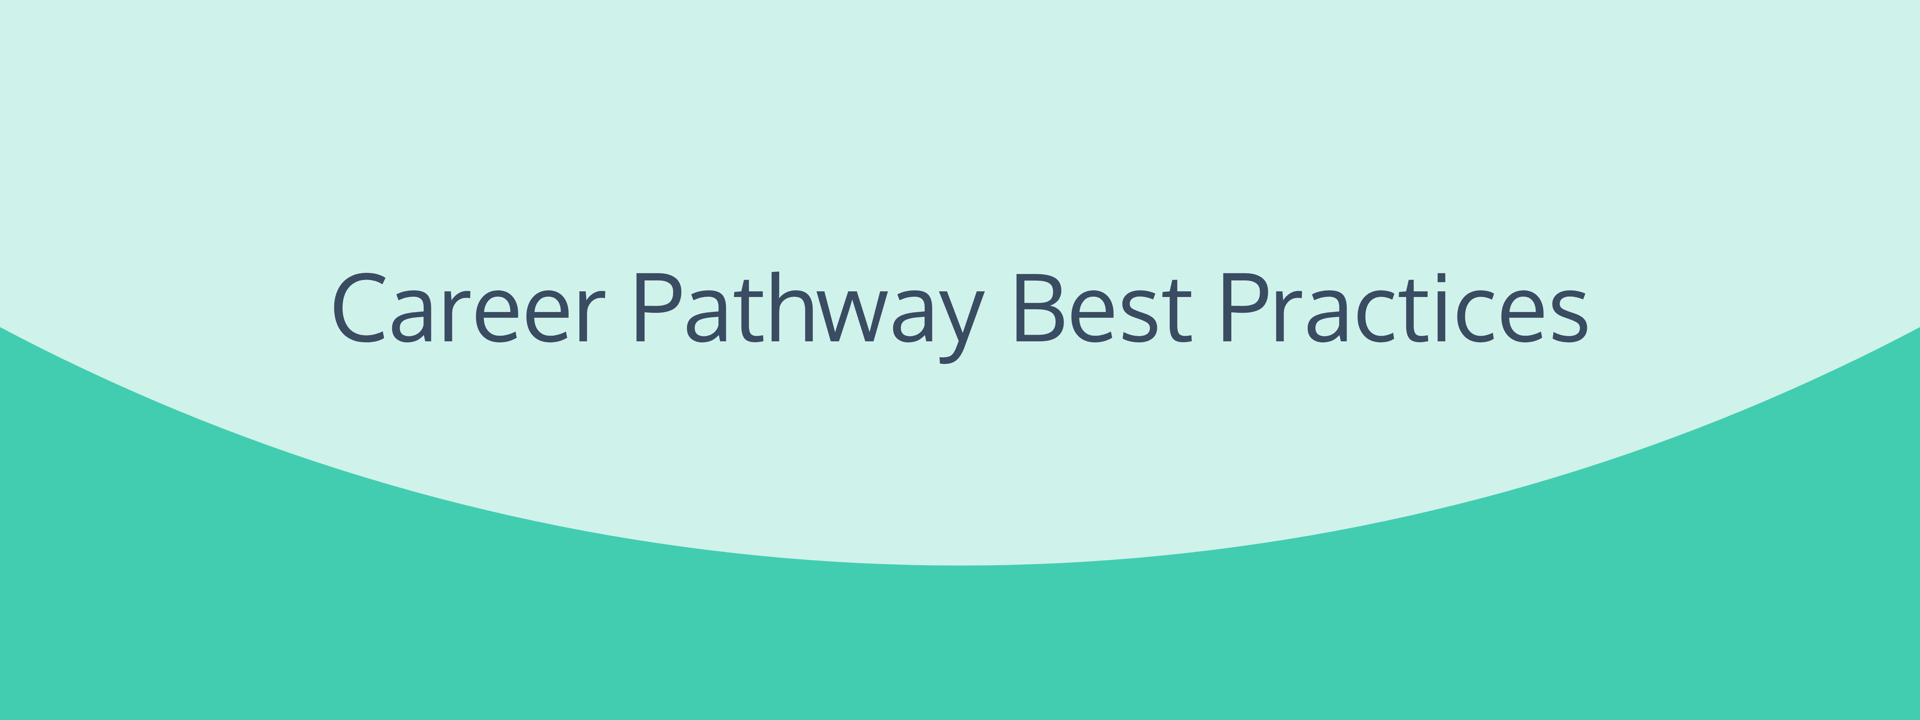 Career Pathway Best Practices